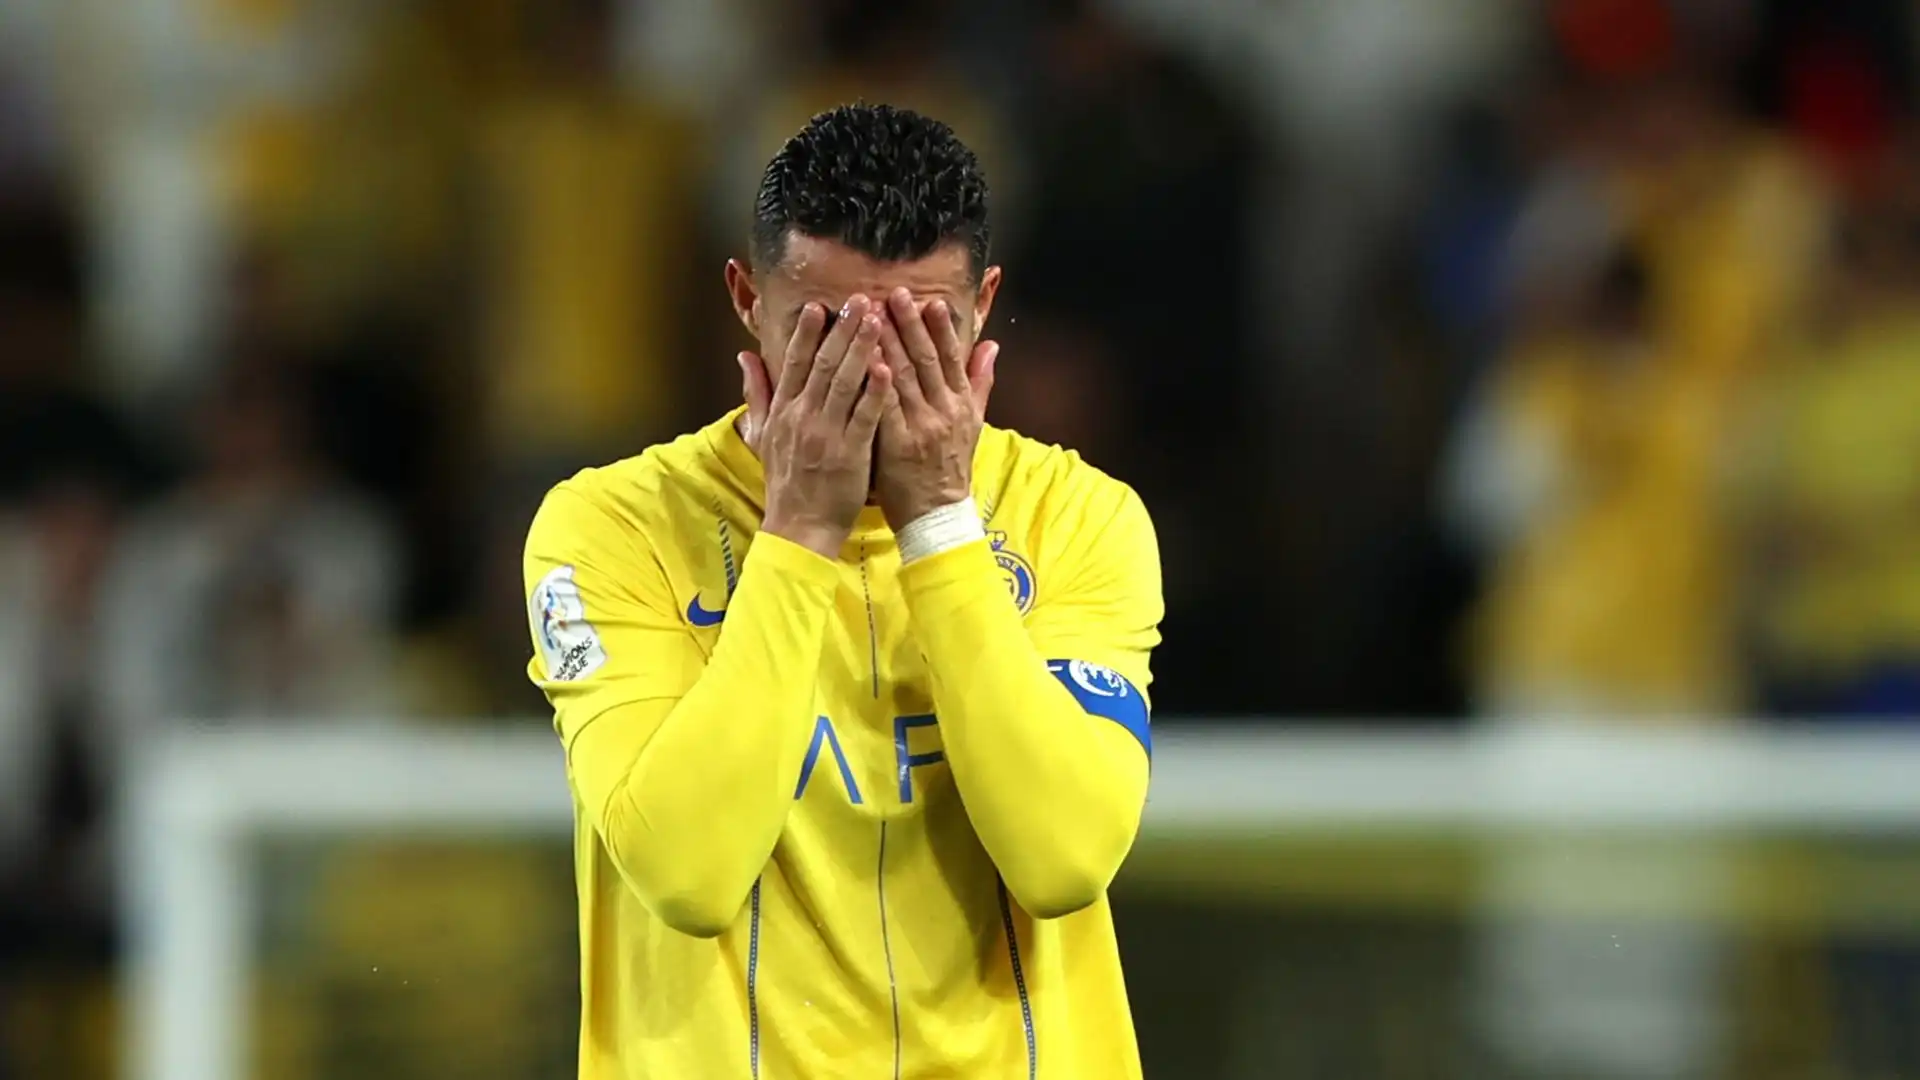 Evidenti la frustrazione e il nervosismo di Ronaldo durante la partita